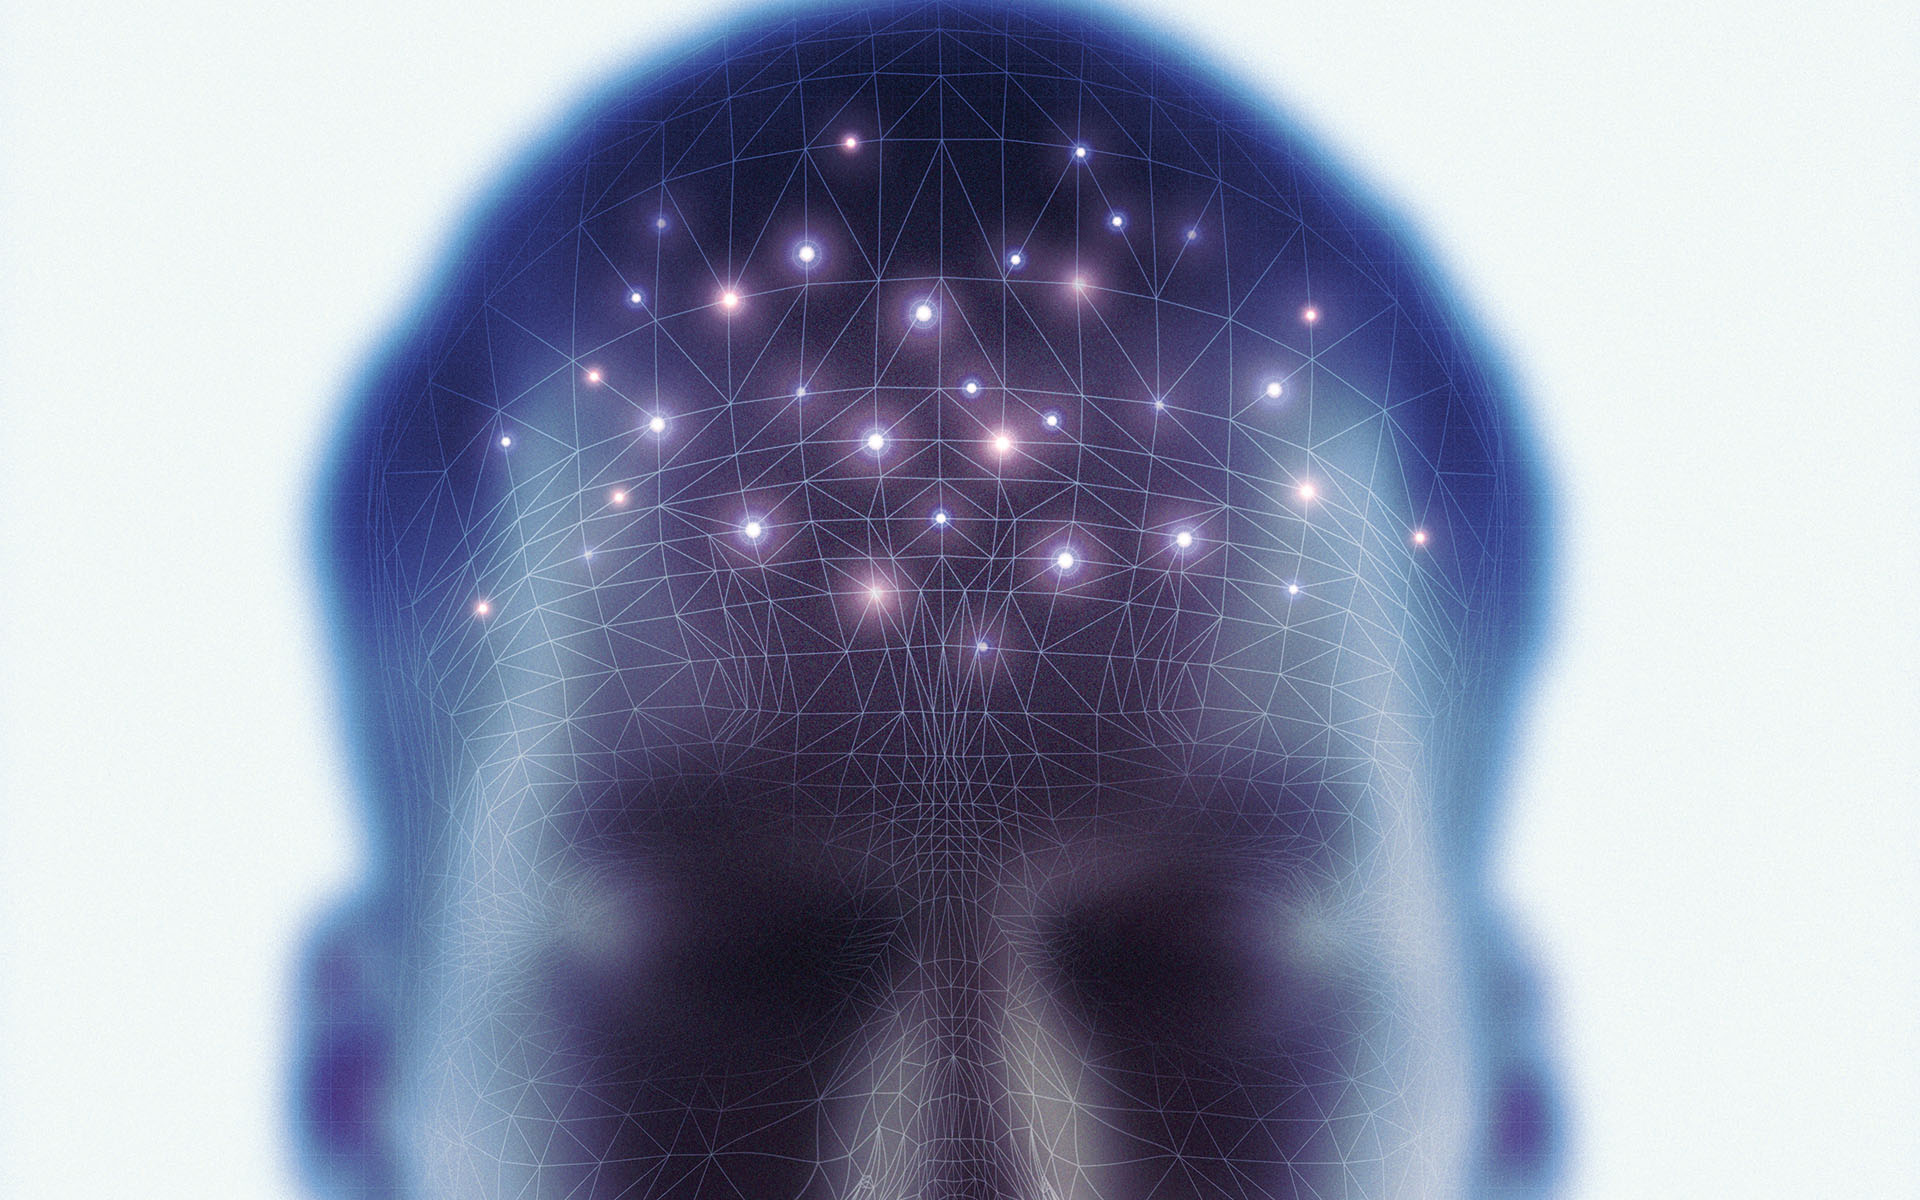 Darstellung eines Kopfes mit verschiedenen Vernetzungen innerhalb des Gehirns